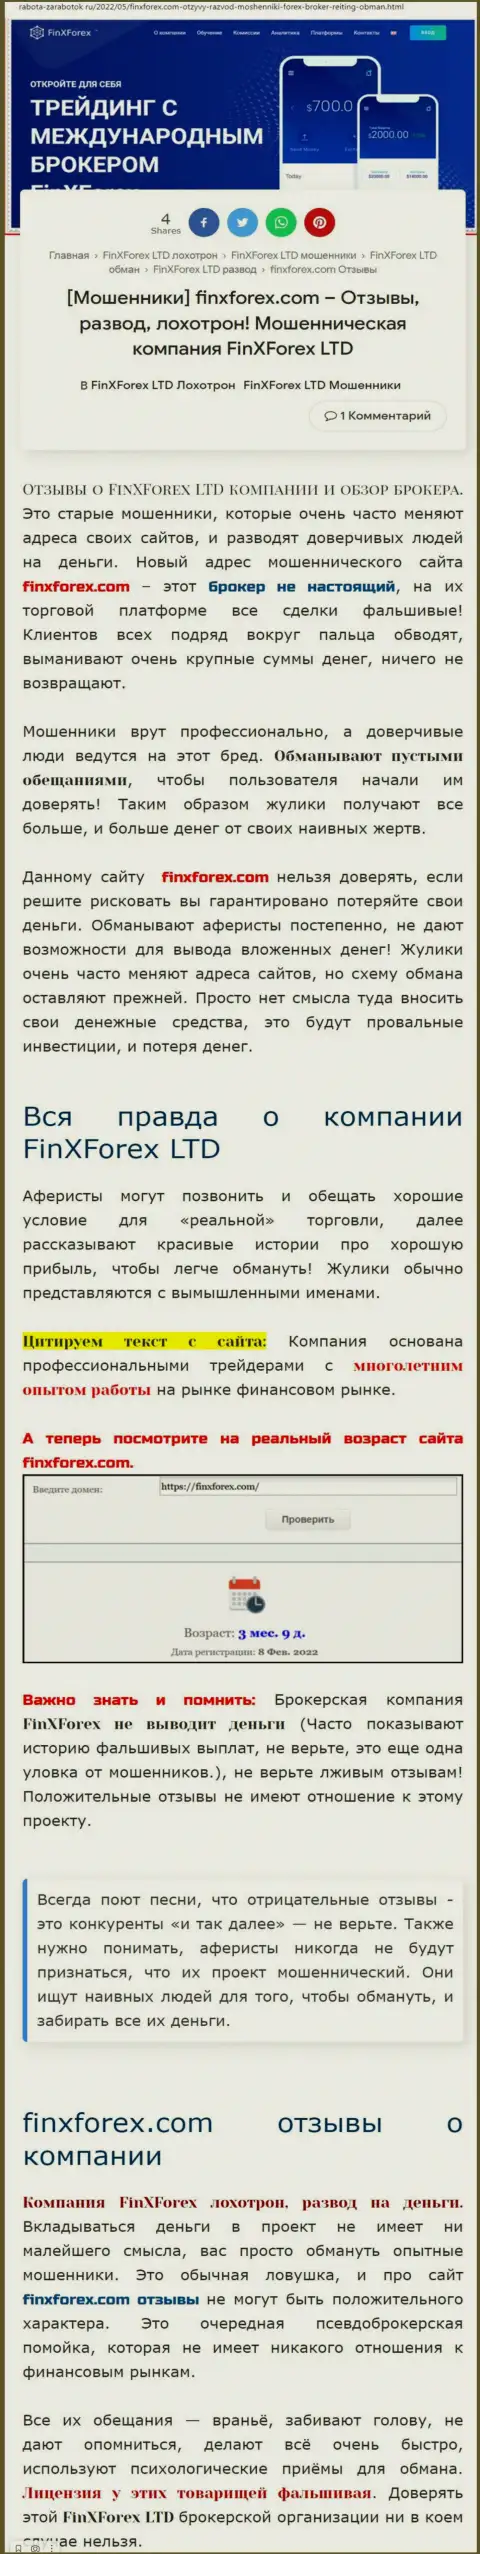 Создатель обзорной публикации об FinXForex Com говорит, что в FinXForex лохотронят